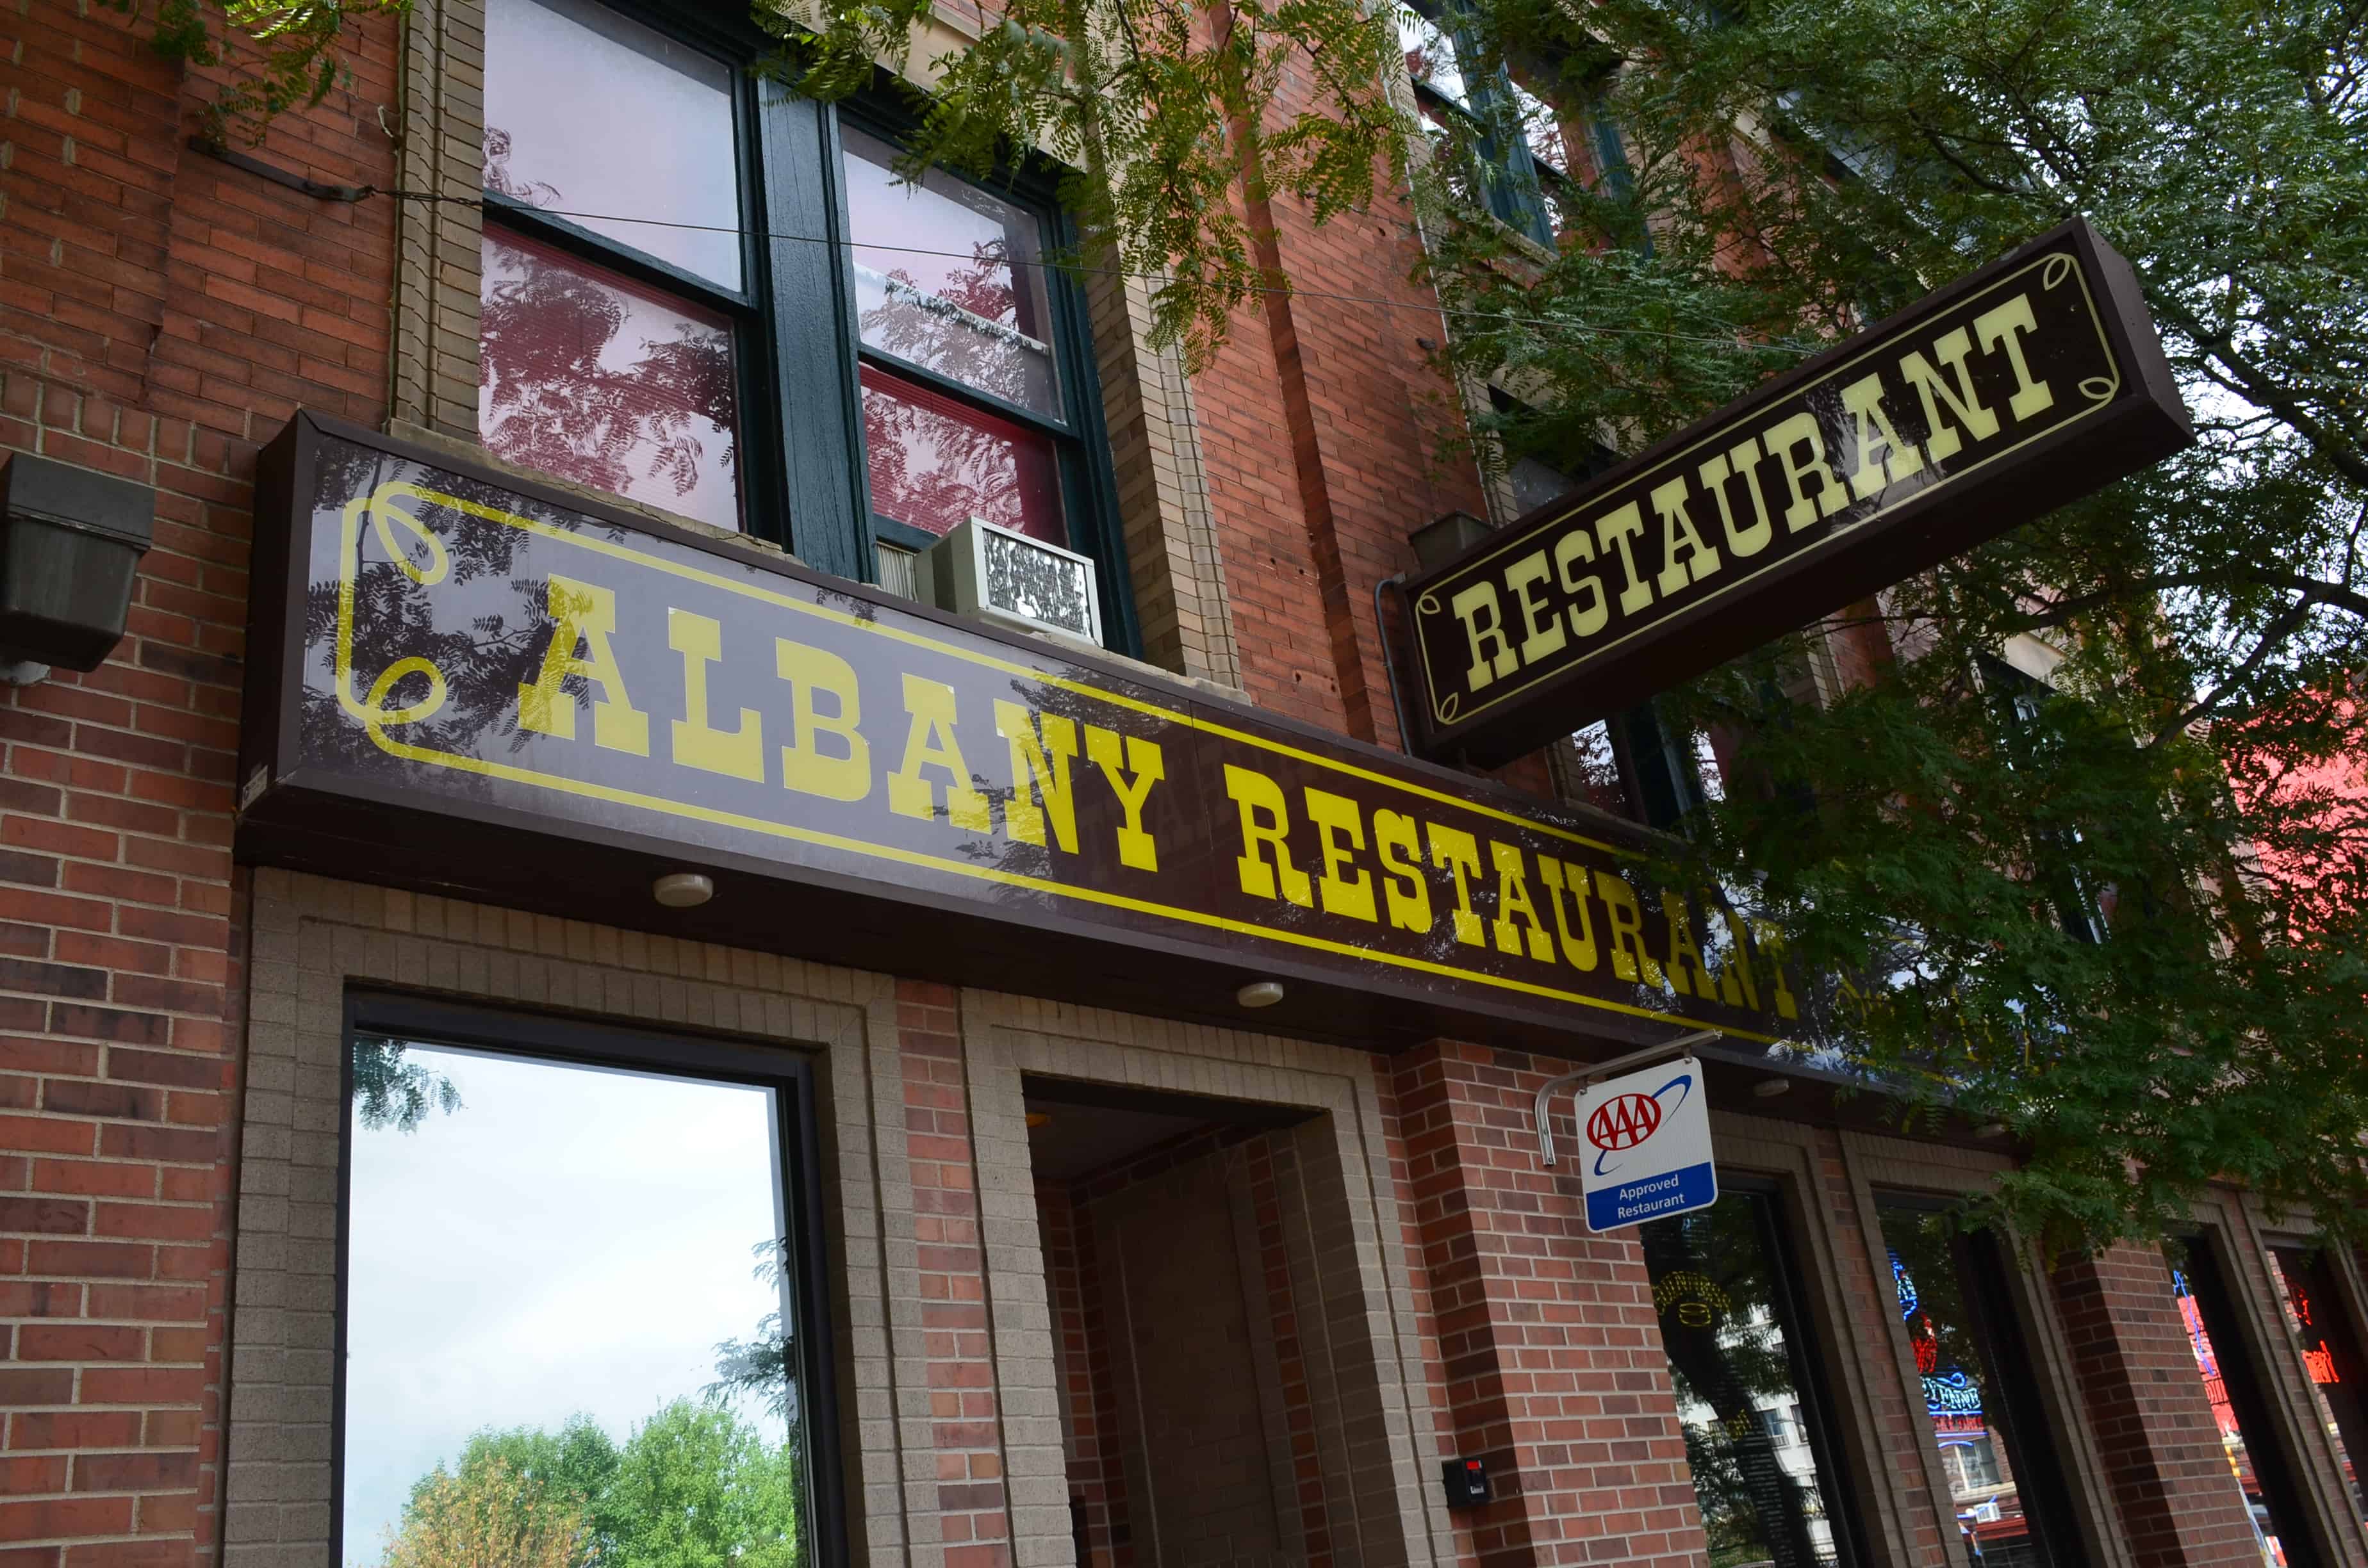 Albany Restaurant in Cheyenne, Wyoming